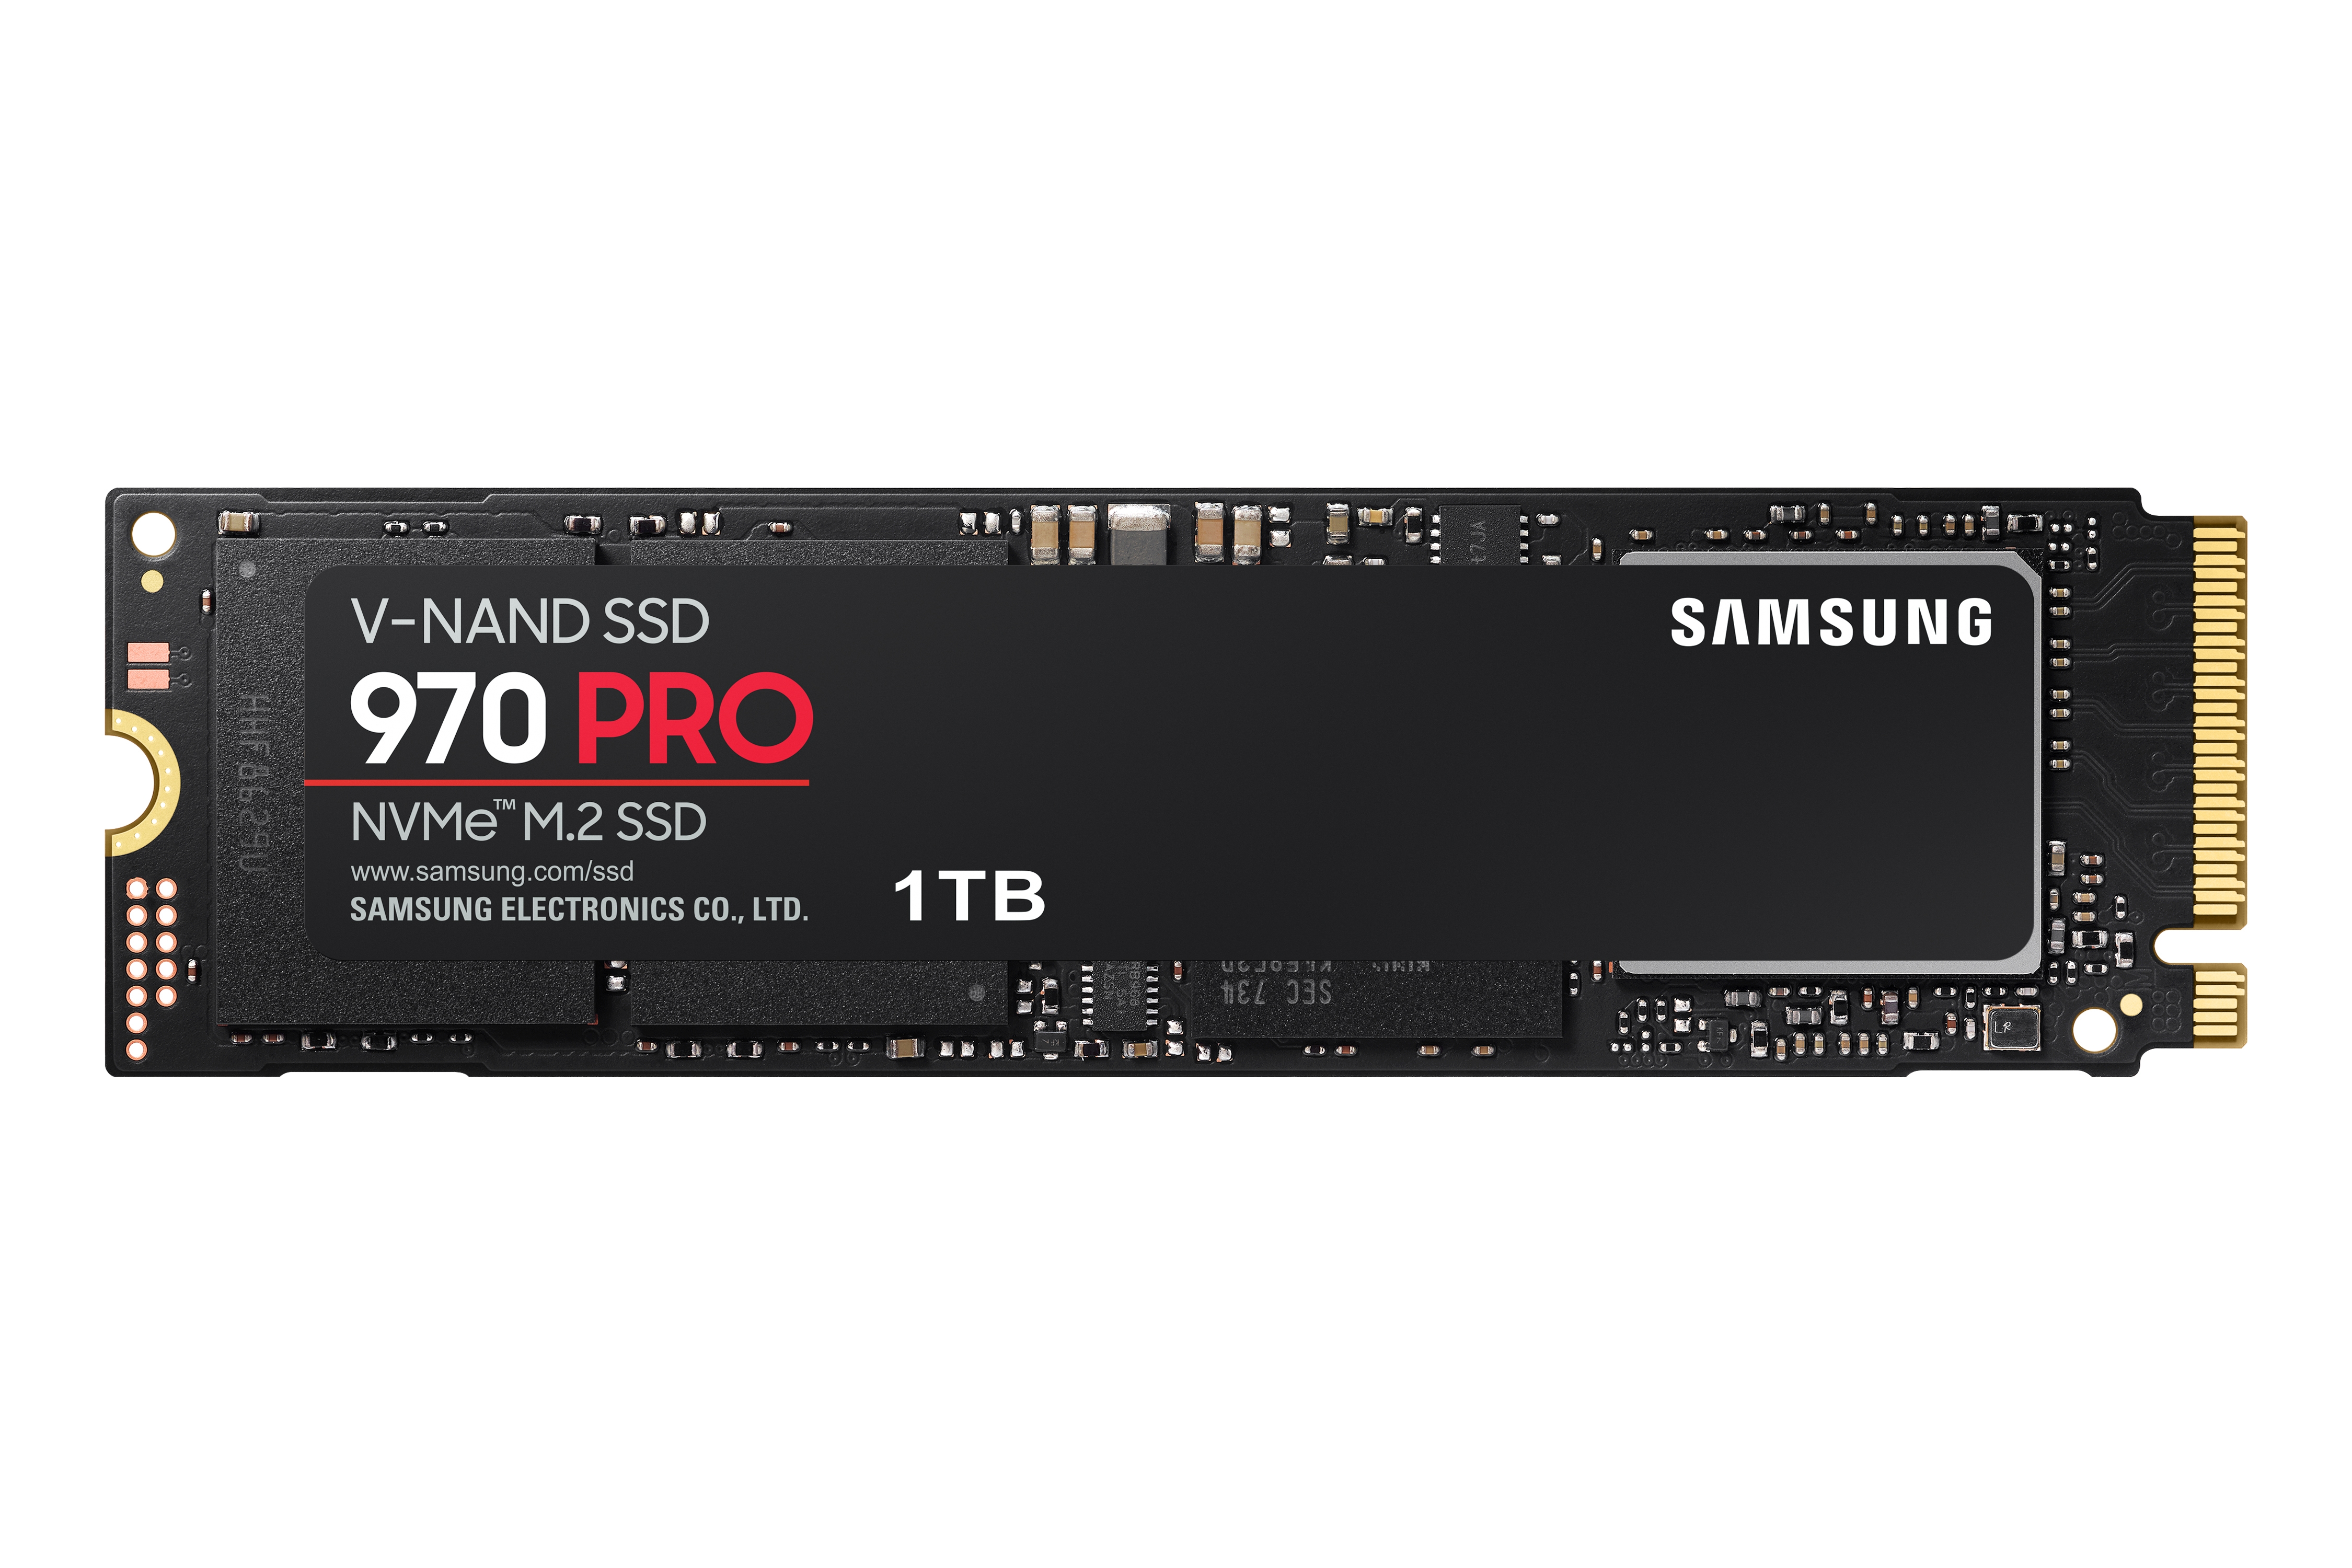 SSD 970 NVMe M.2 1TB Storage - MZ-V7P1T0BW | Samsung US